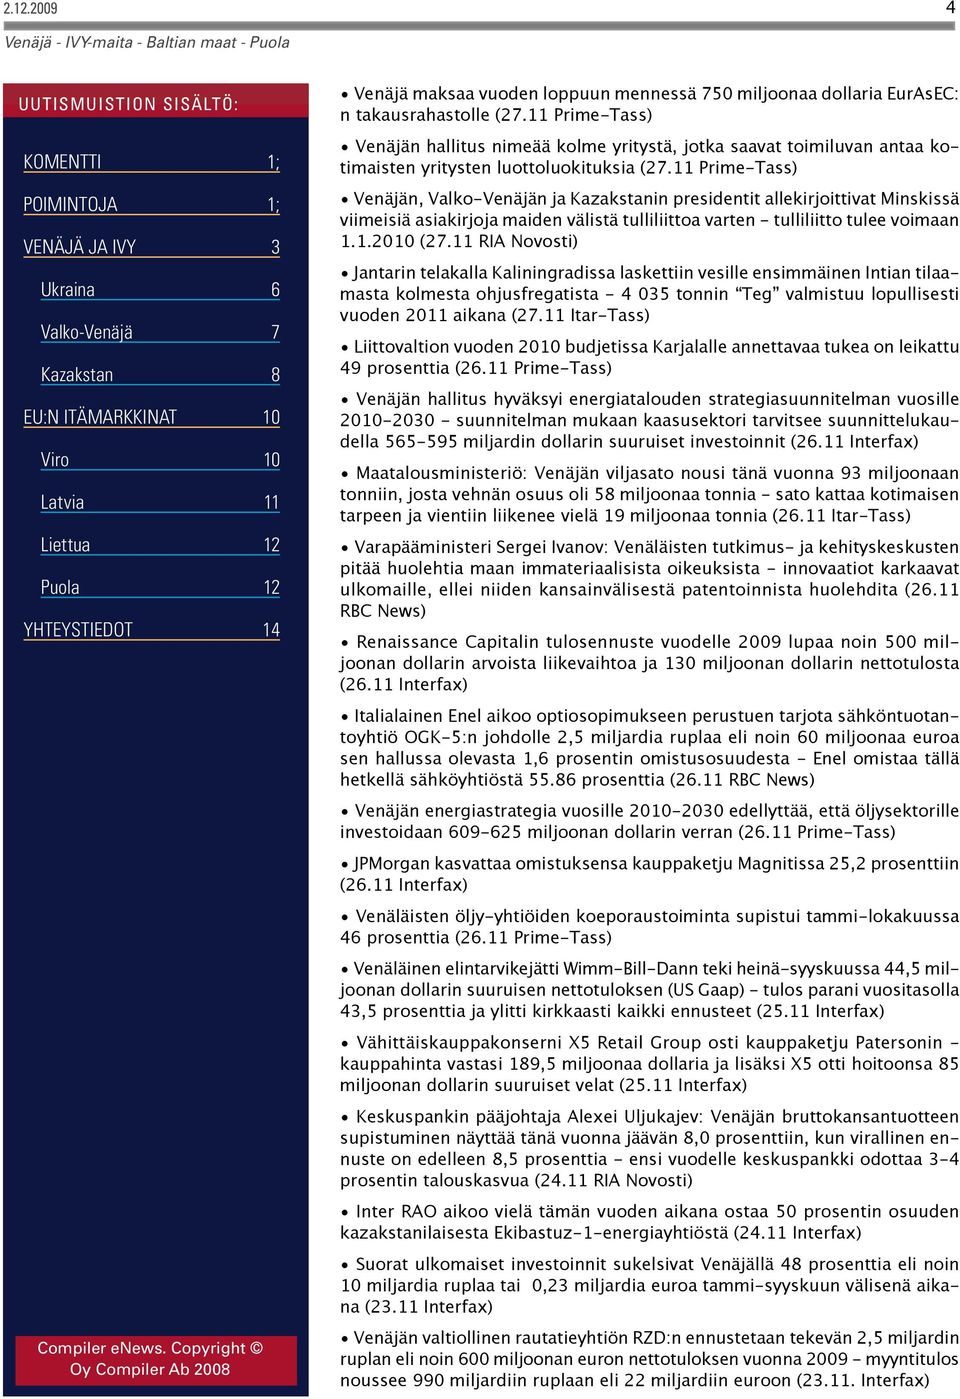 11 Prime-Tass) Venäjän, Valko-Venäjän ja Kazakstanin presidentit allekirjoittivat Minskissä viimeisiä asiakirjoja maiden välistä tulliliittoa varten - tulliliitto tulee voimaan 1.1.2010 (27.